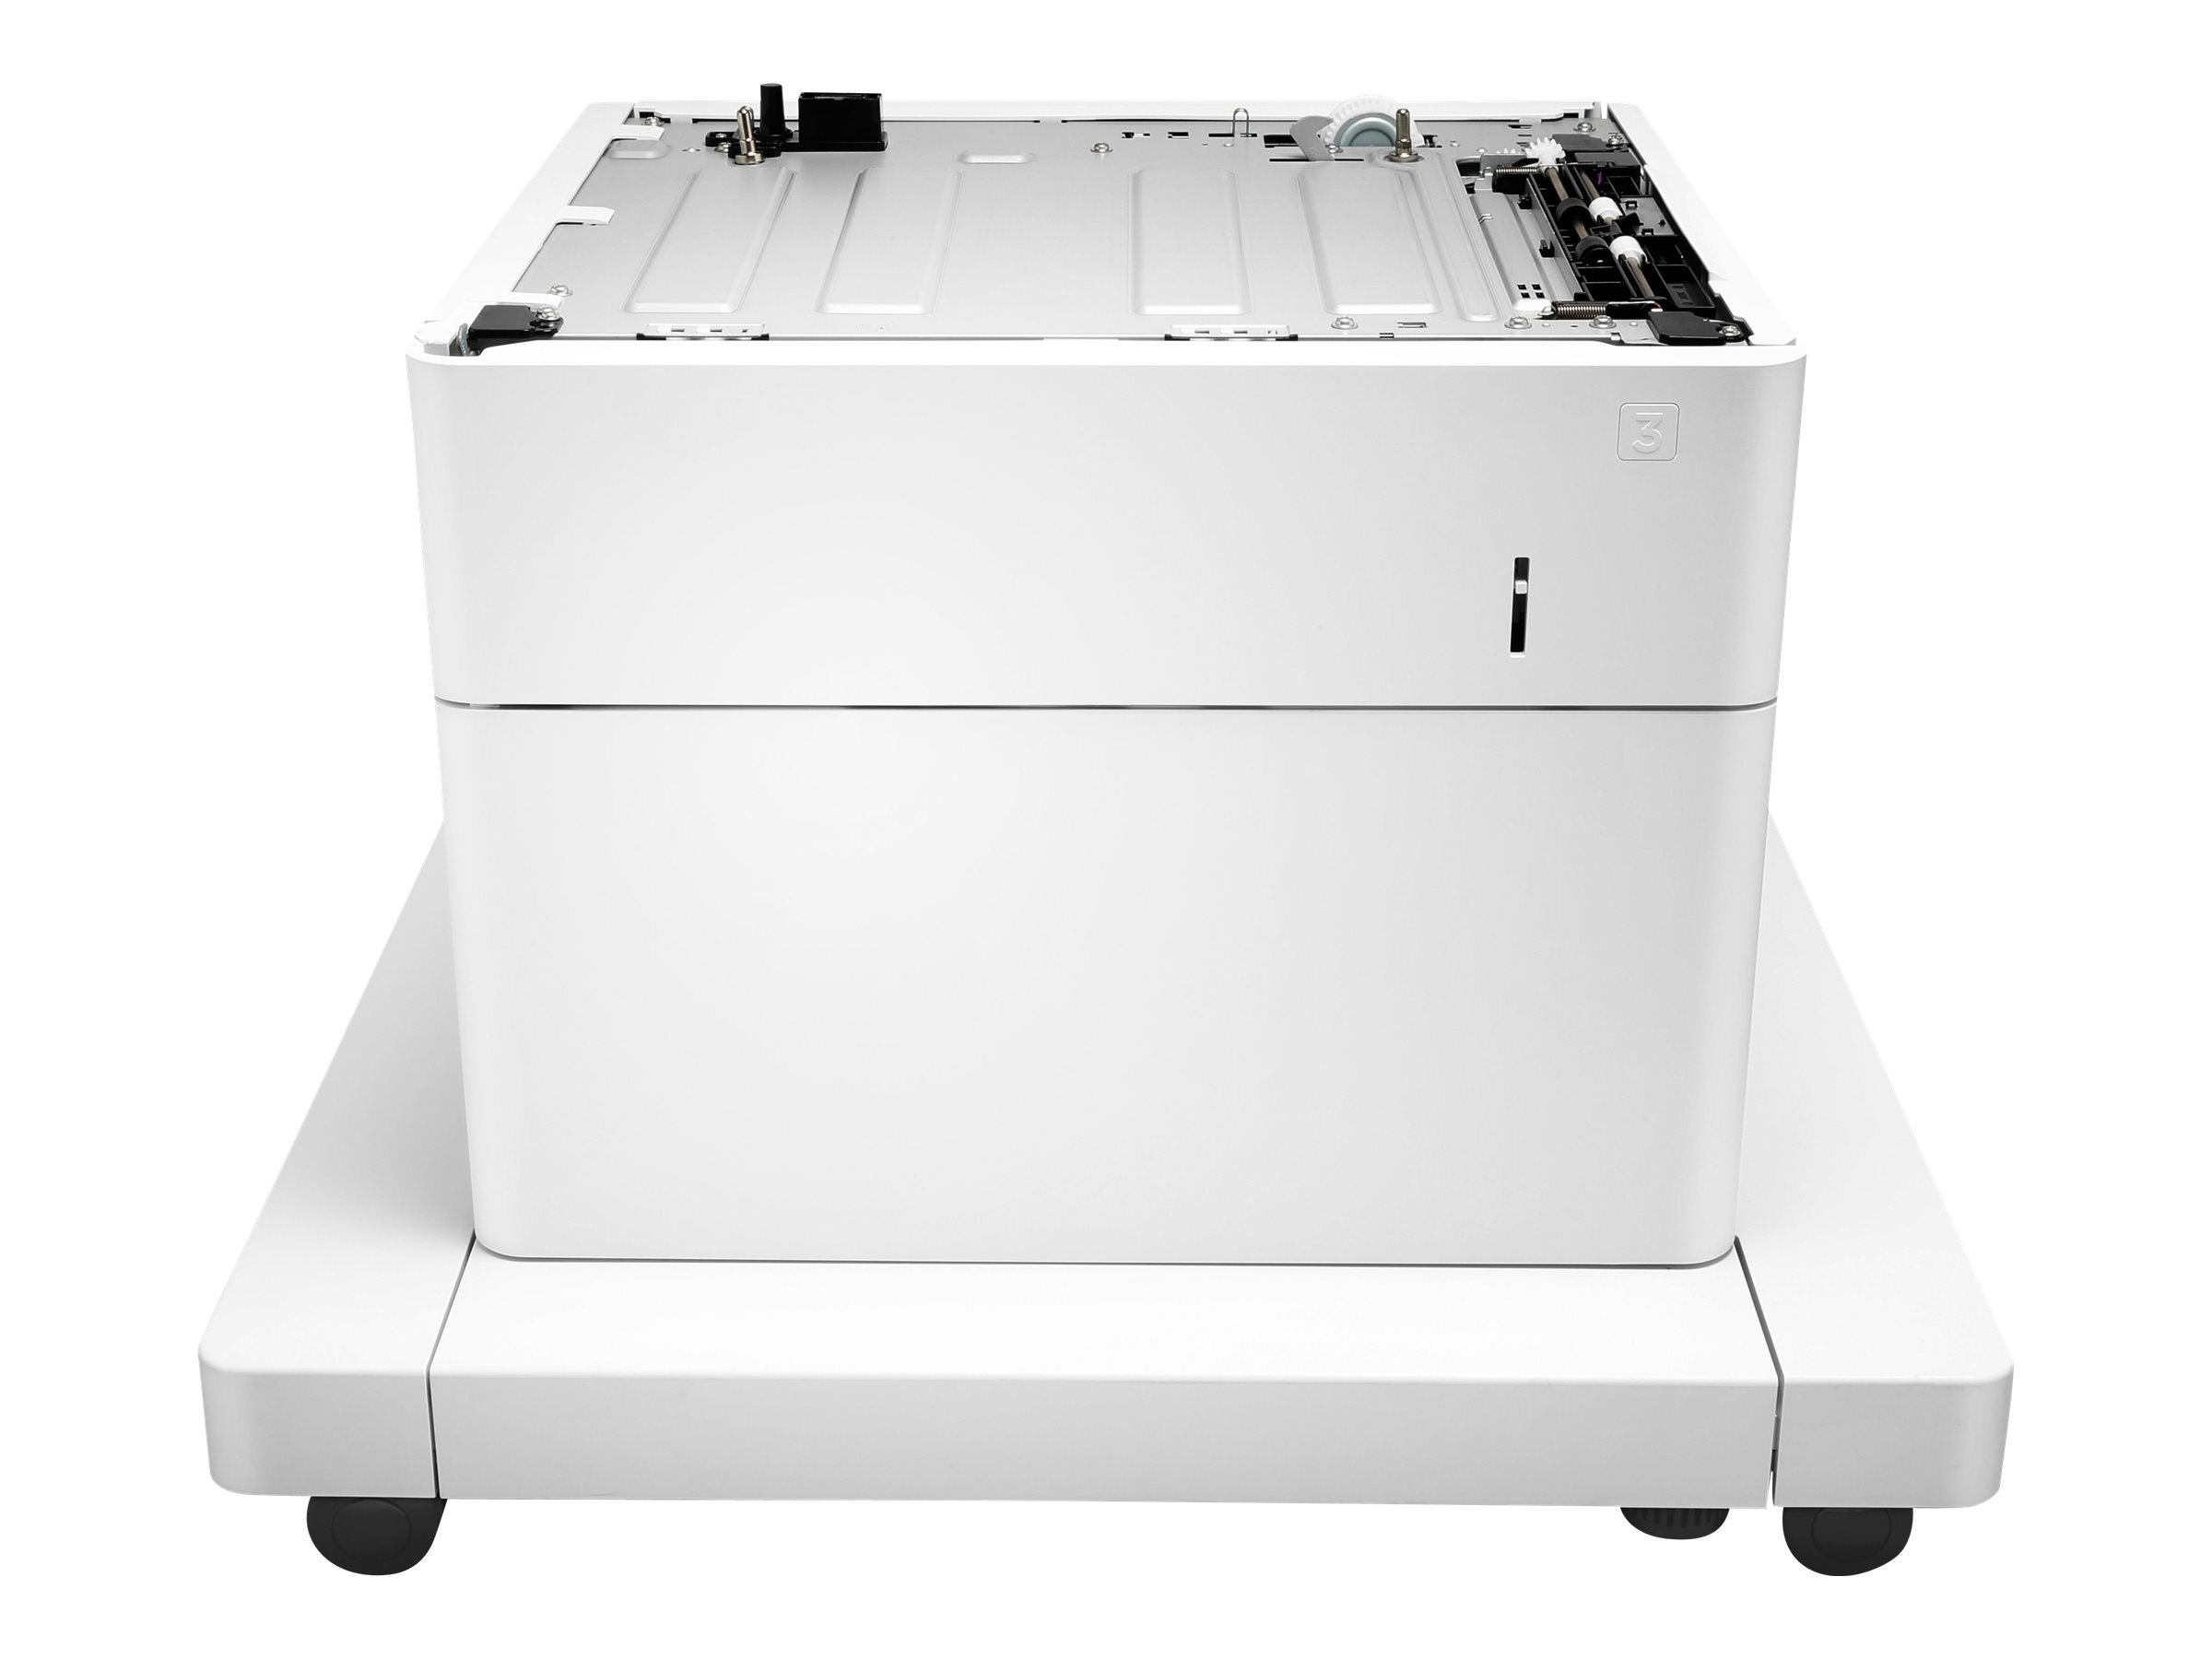 HP Papierzufhrung und Schrank - Druckerbasis mit Medienzufhrung - 550 Bltter in 1 Schubladen (Trays) - fr LaserJet Enterpris